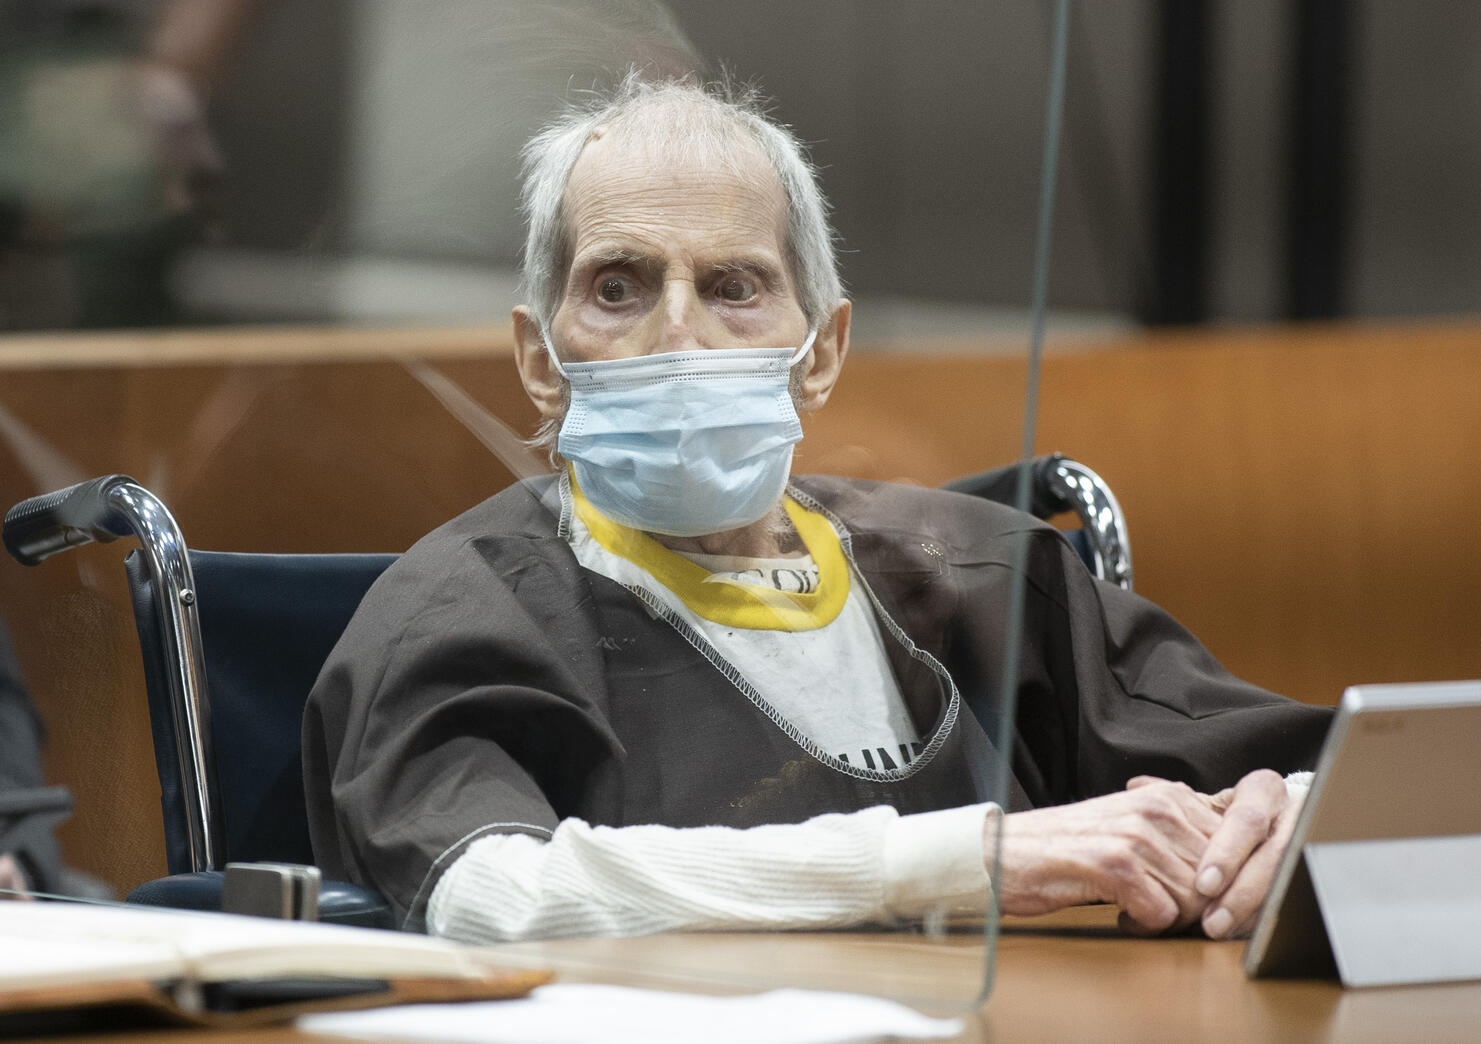 Robert Durst Sentenced To Life In Prison For Murder